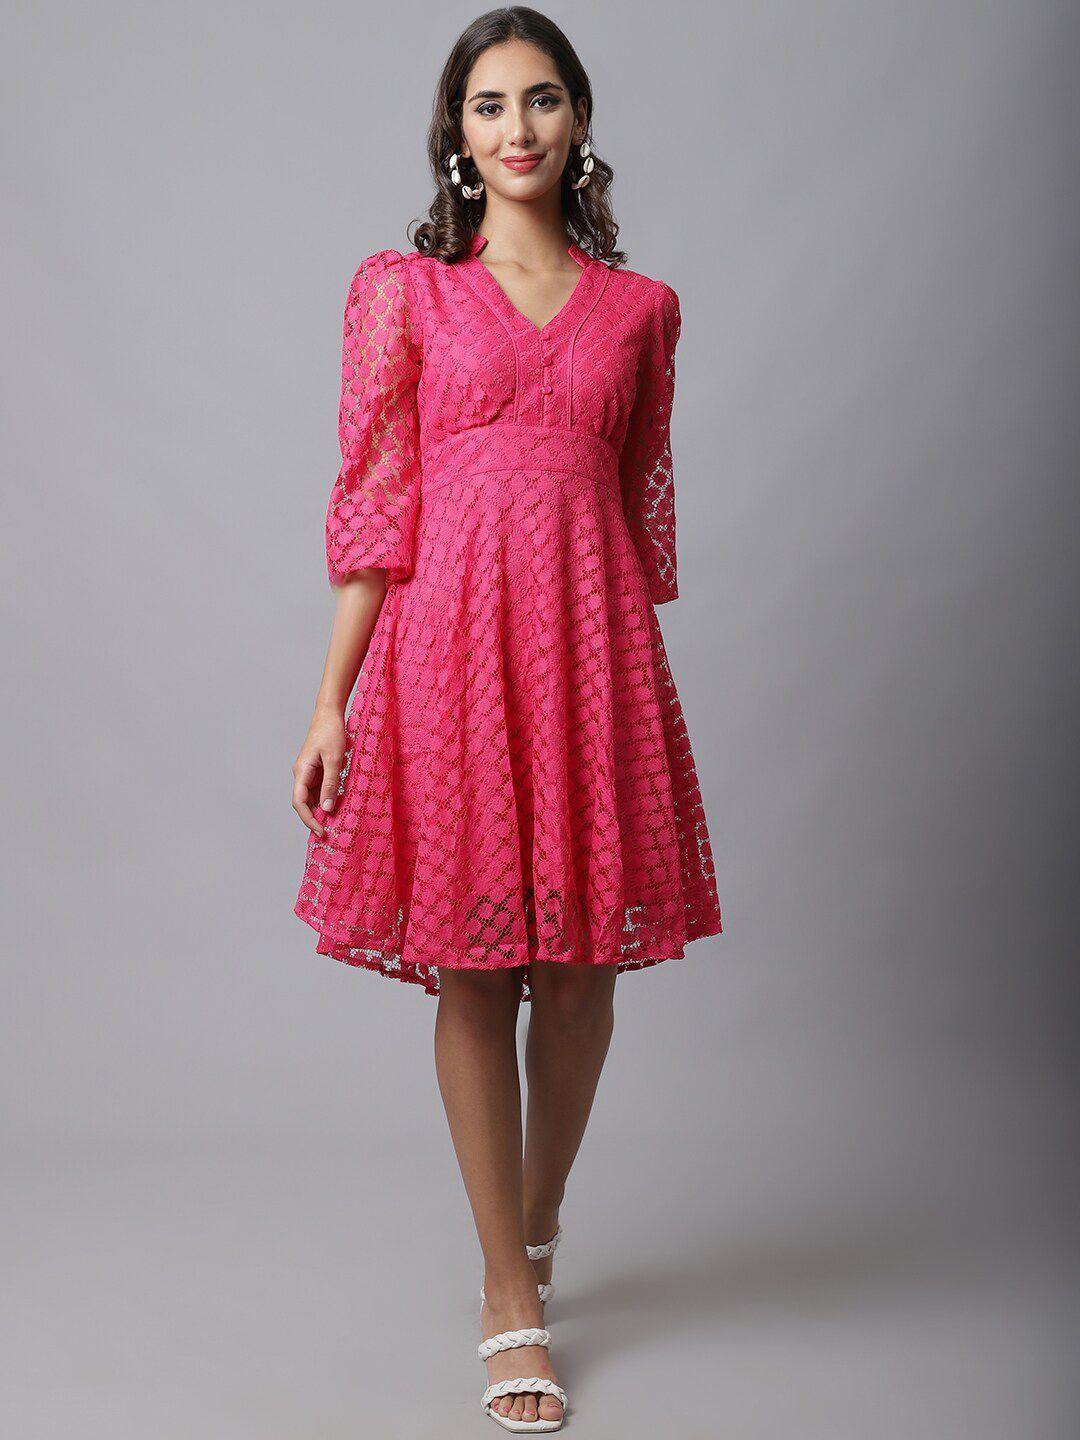 marc-louis-pink-net-empire-dress